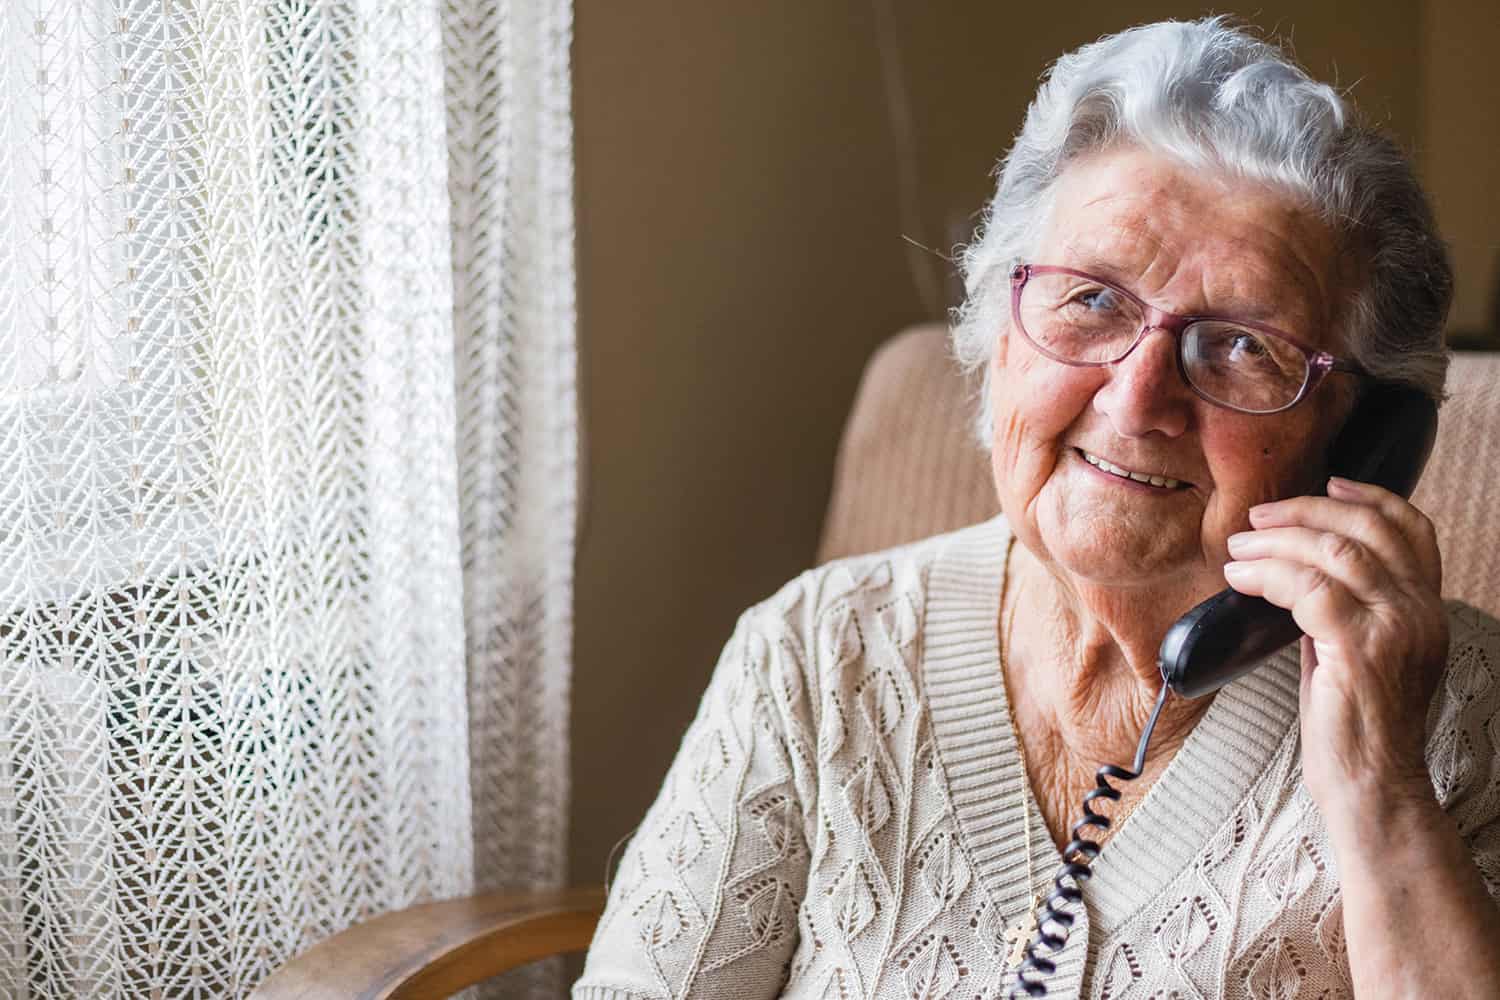 An elderly lady speaking on her landline phone